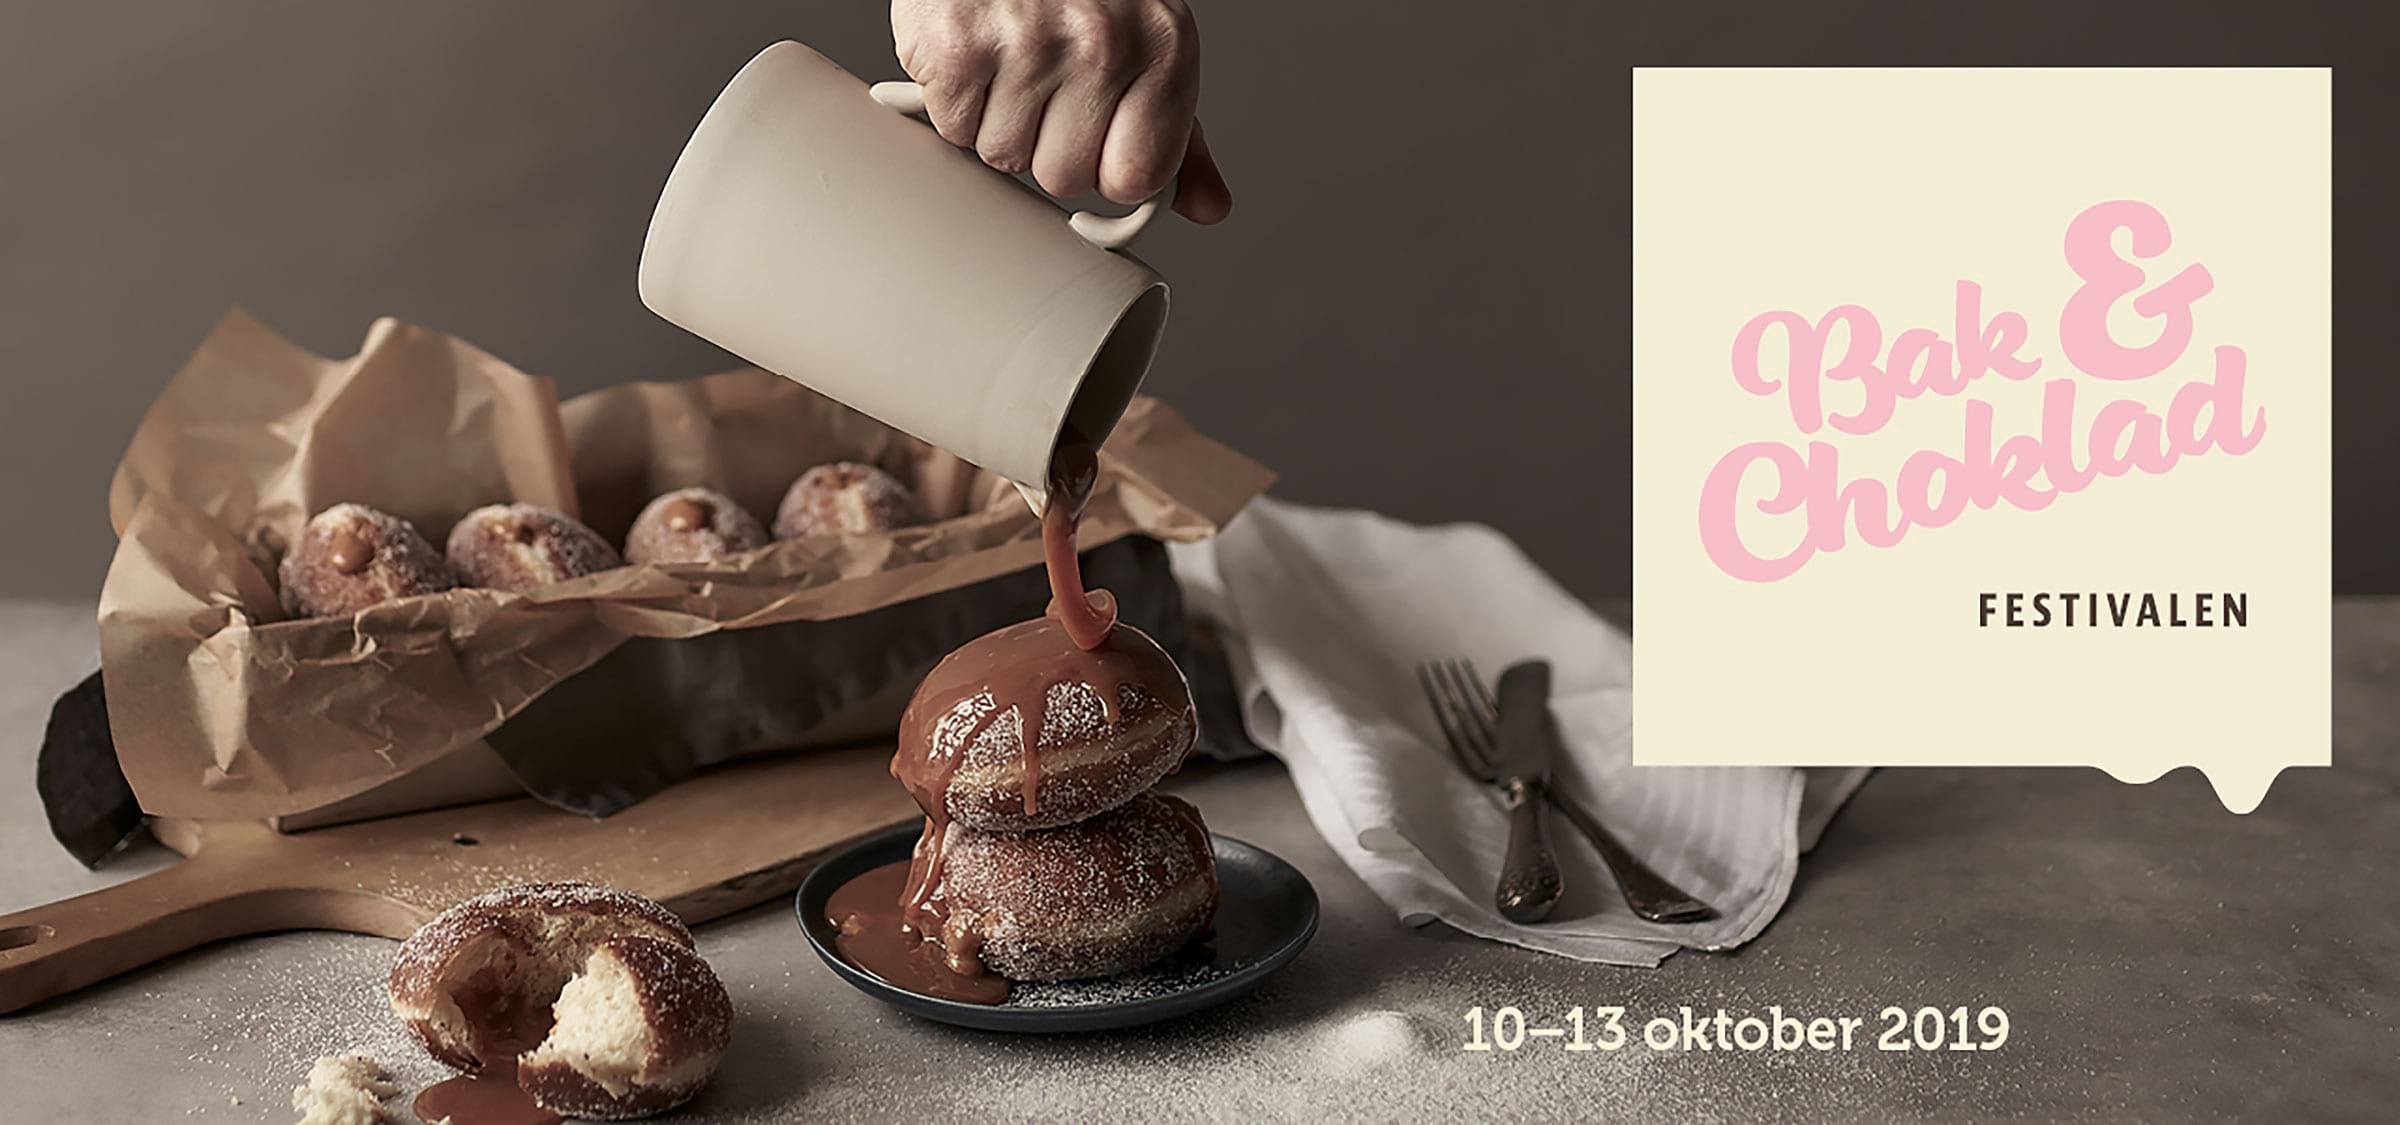 Bak- & Chokladfestivalen till Stockholm i oktober 